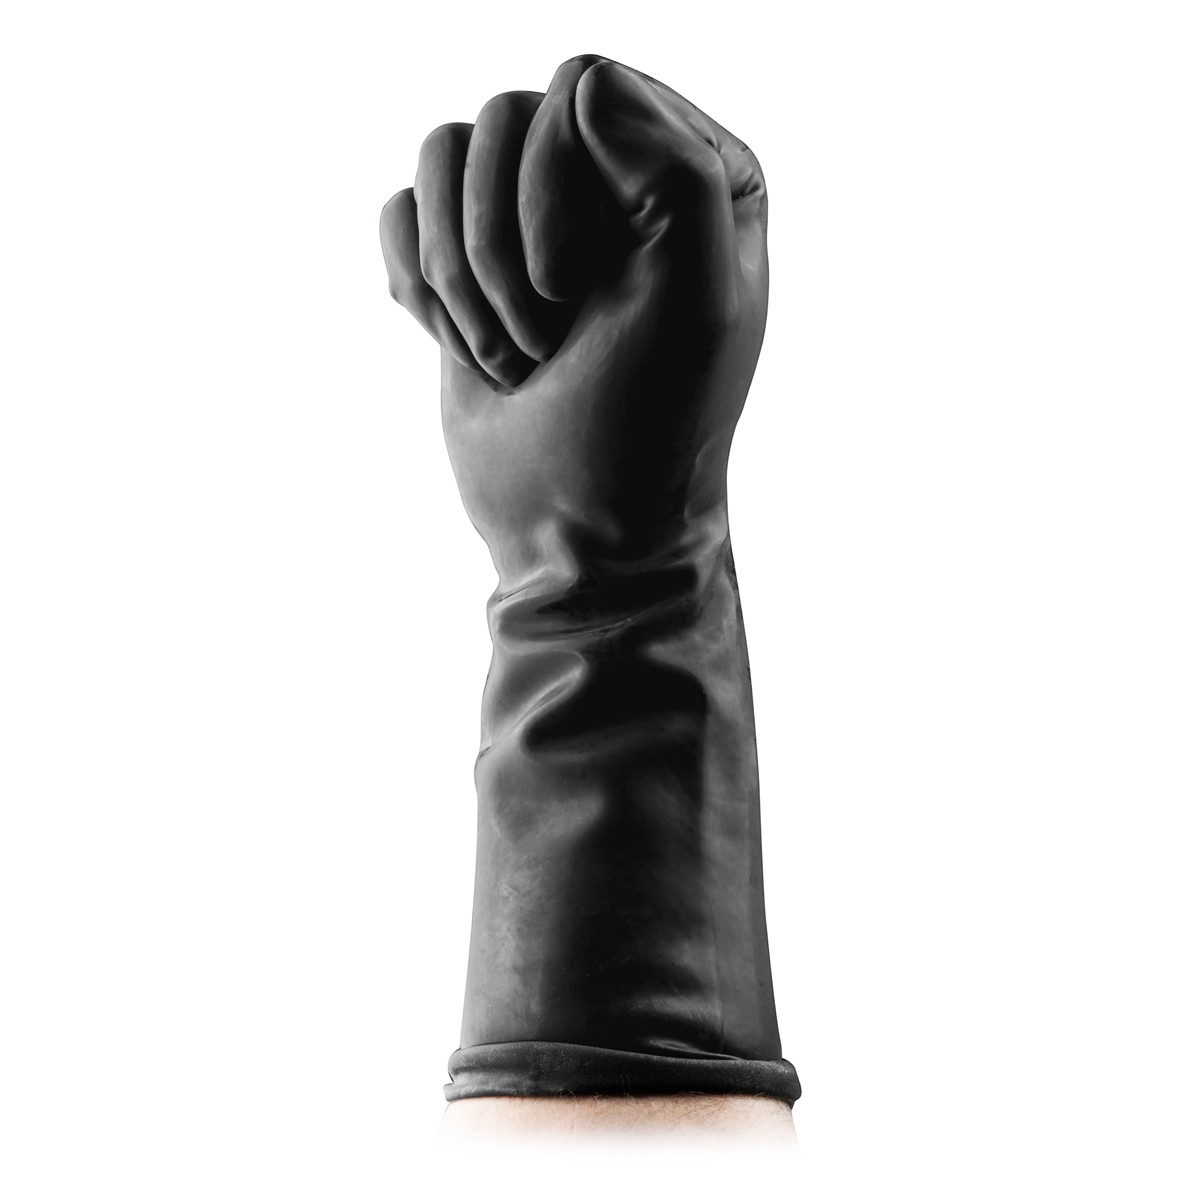 BUTTR Gauntlets Fisting Gloves перчатки для фистинга, OS (чёрные) - фото 1